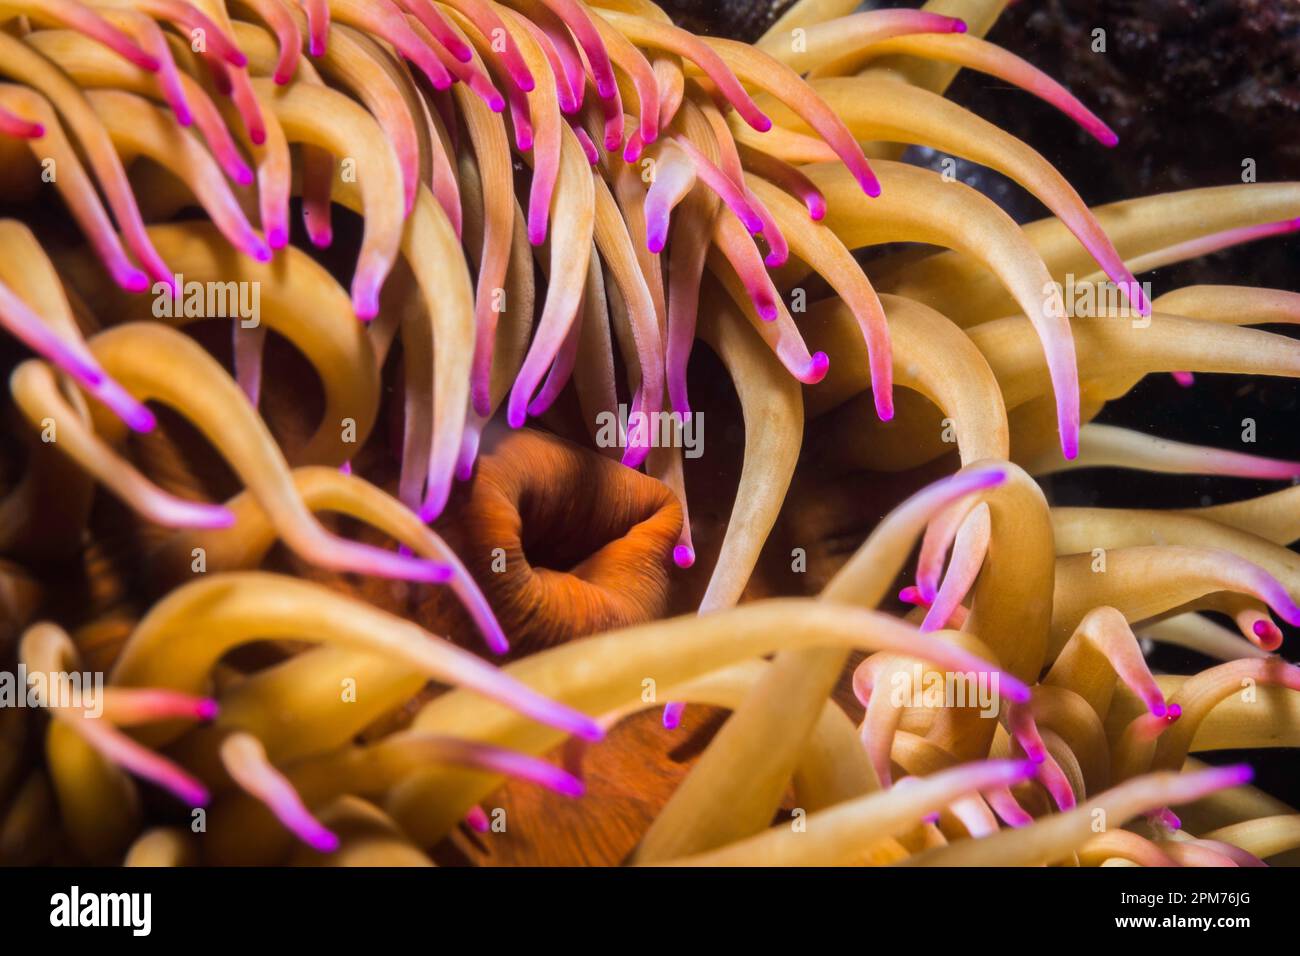 Makro einer falschen Pflaumenanemone unter Wasser (Pseudactinia flagellifera) mit orangefarbenem Körper und cremefarbenen Tentakeln mit malvenfarbenen Spitzen Stockfoto